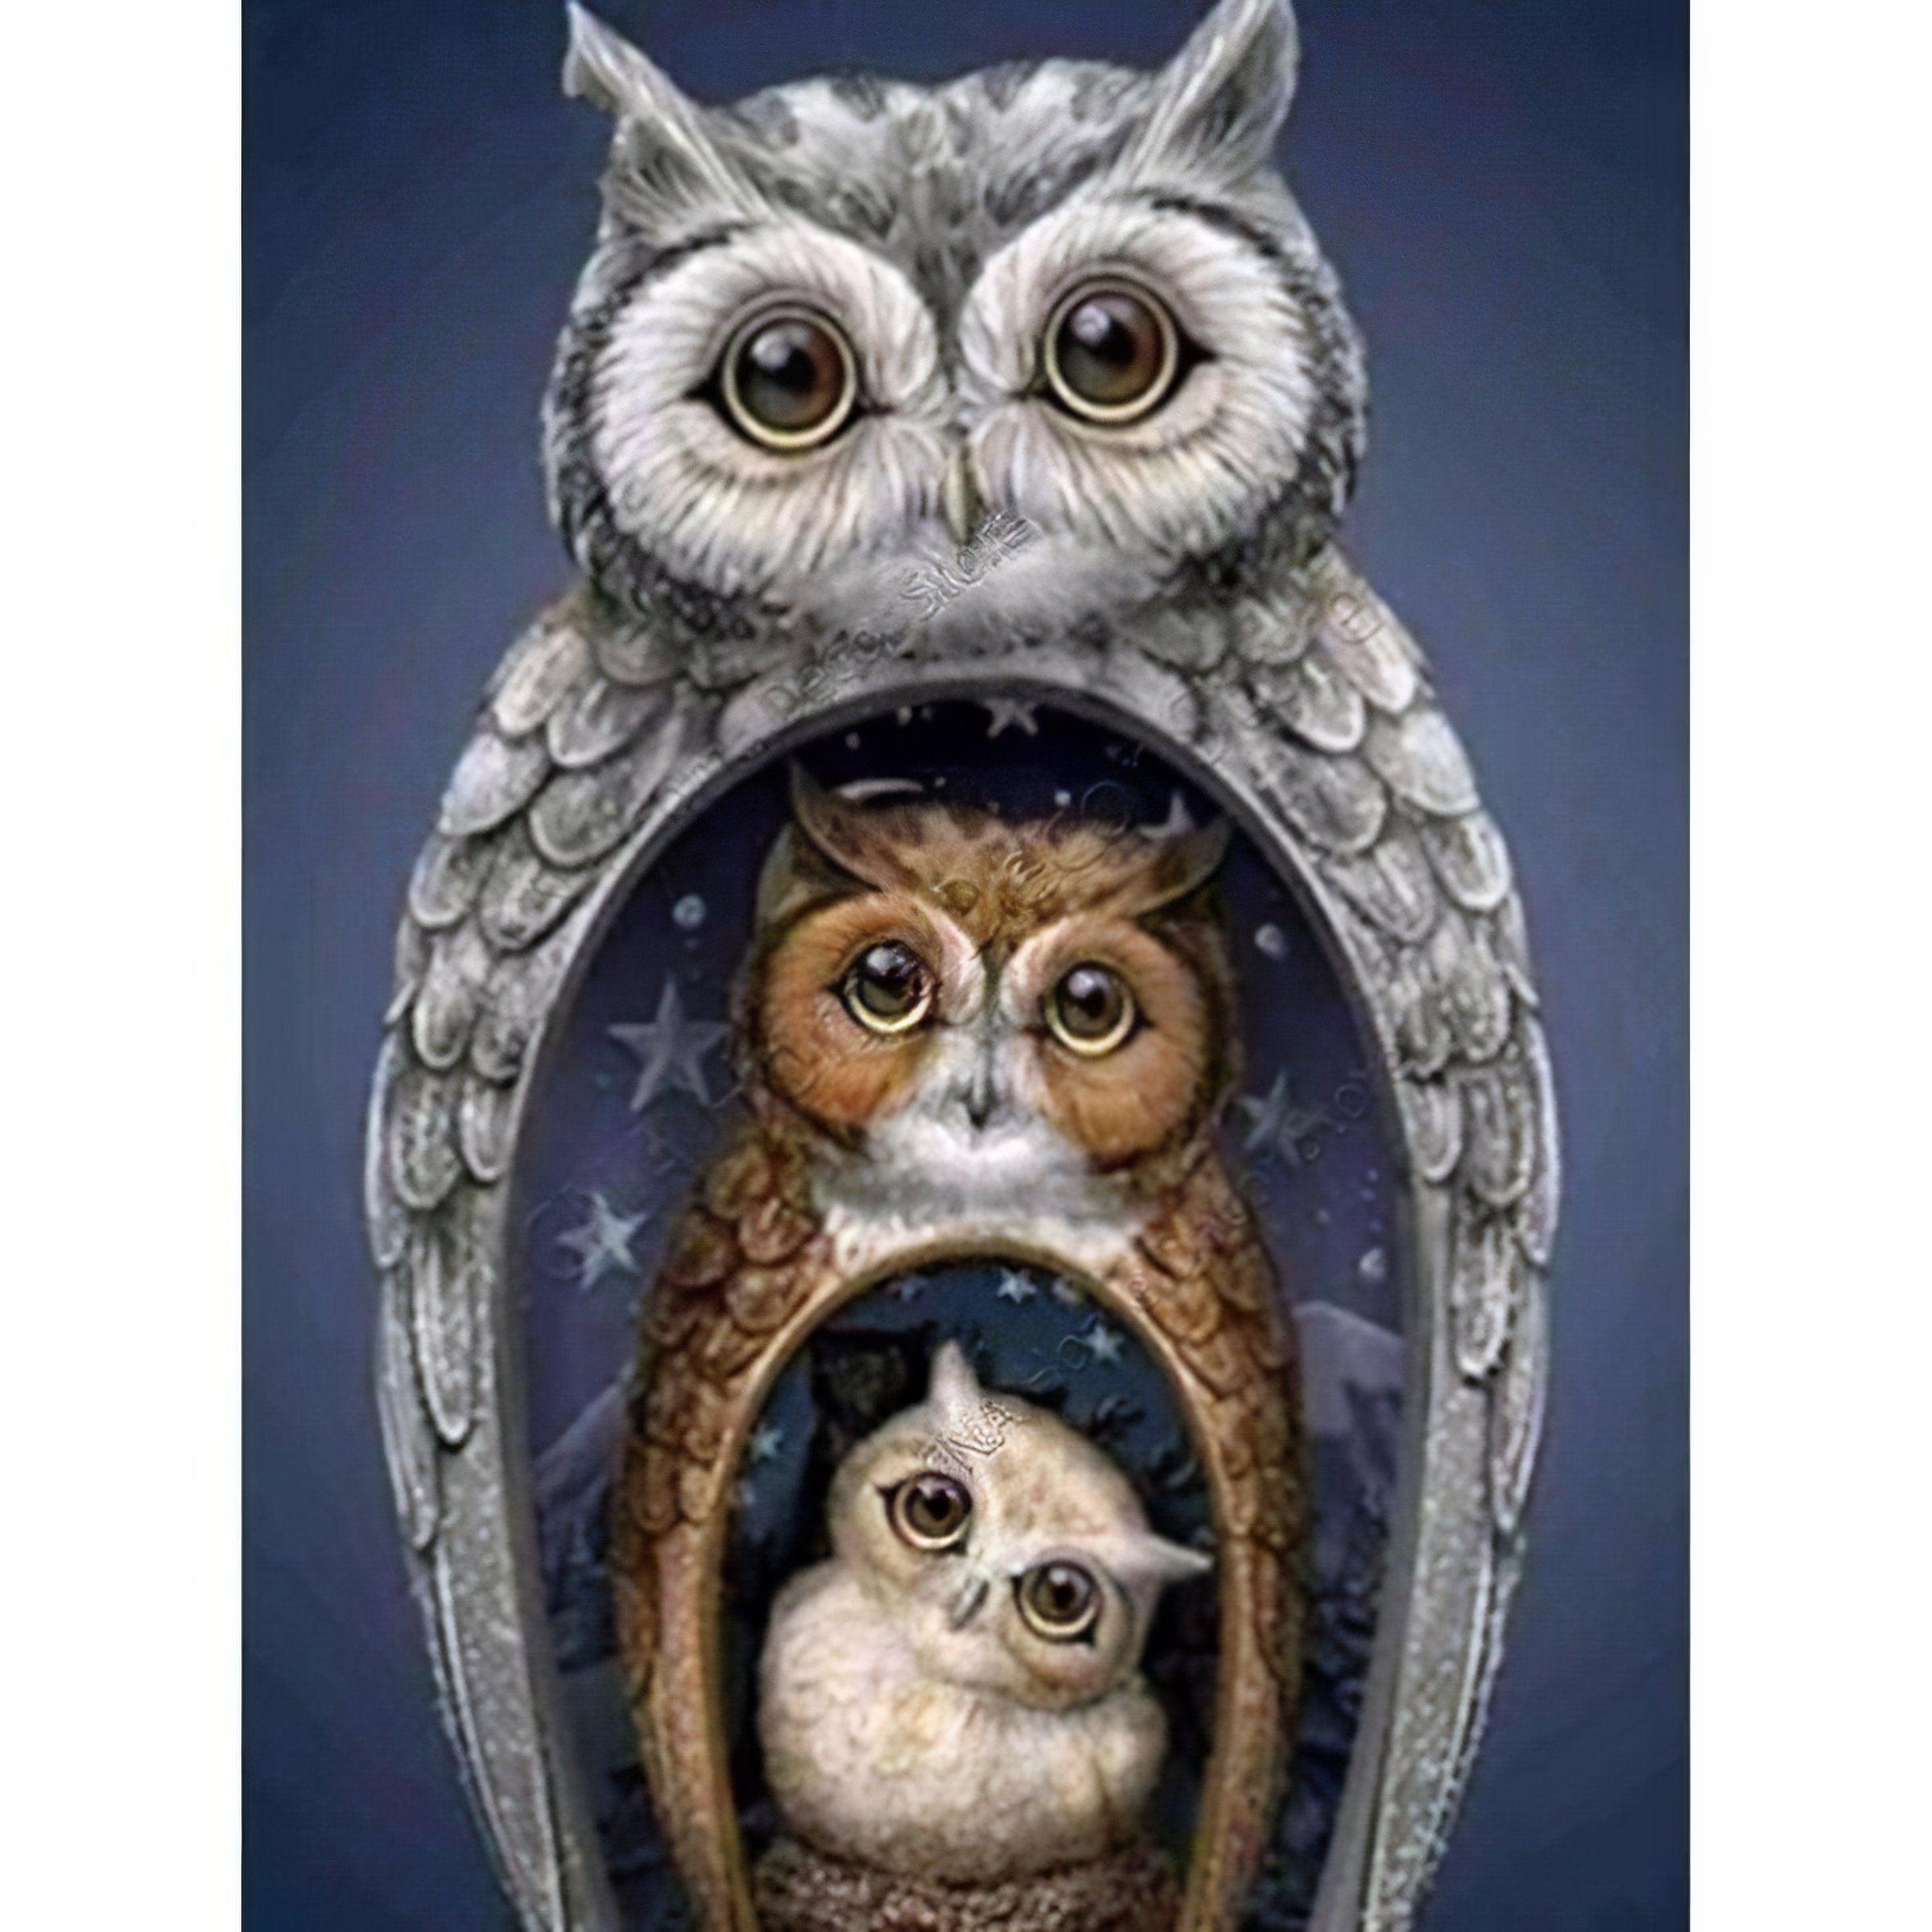 Family Of Owl